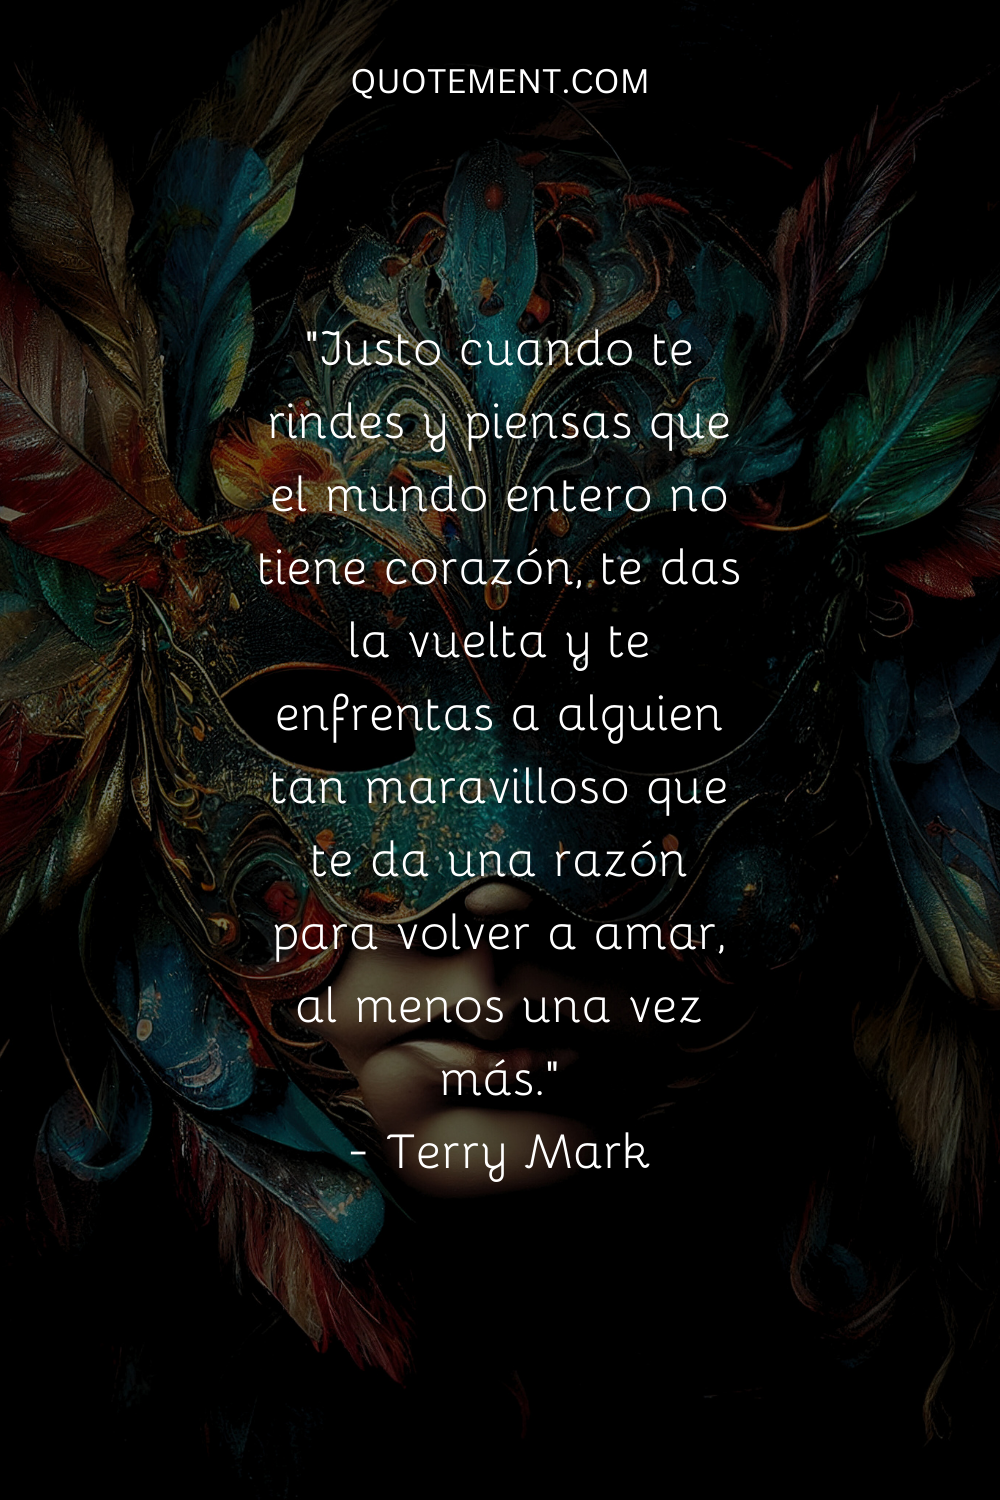 "Justo cuando te rindes y piensas que el mundo entero no tiene corazón, te das la vuelta y te enfrentas a alguien tan maravilloso que te da una razón para volver a amar, al menos una vez más". - Terry Mark